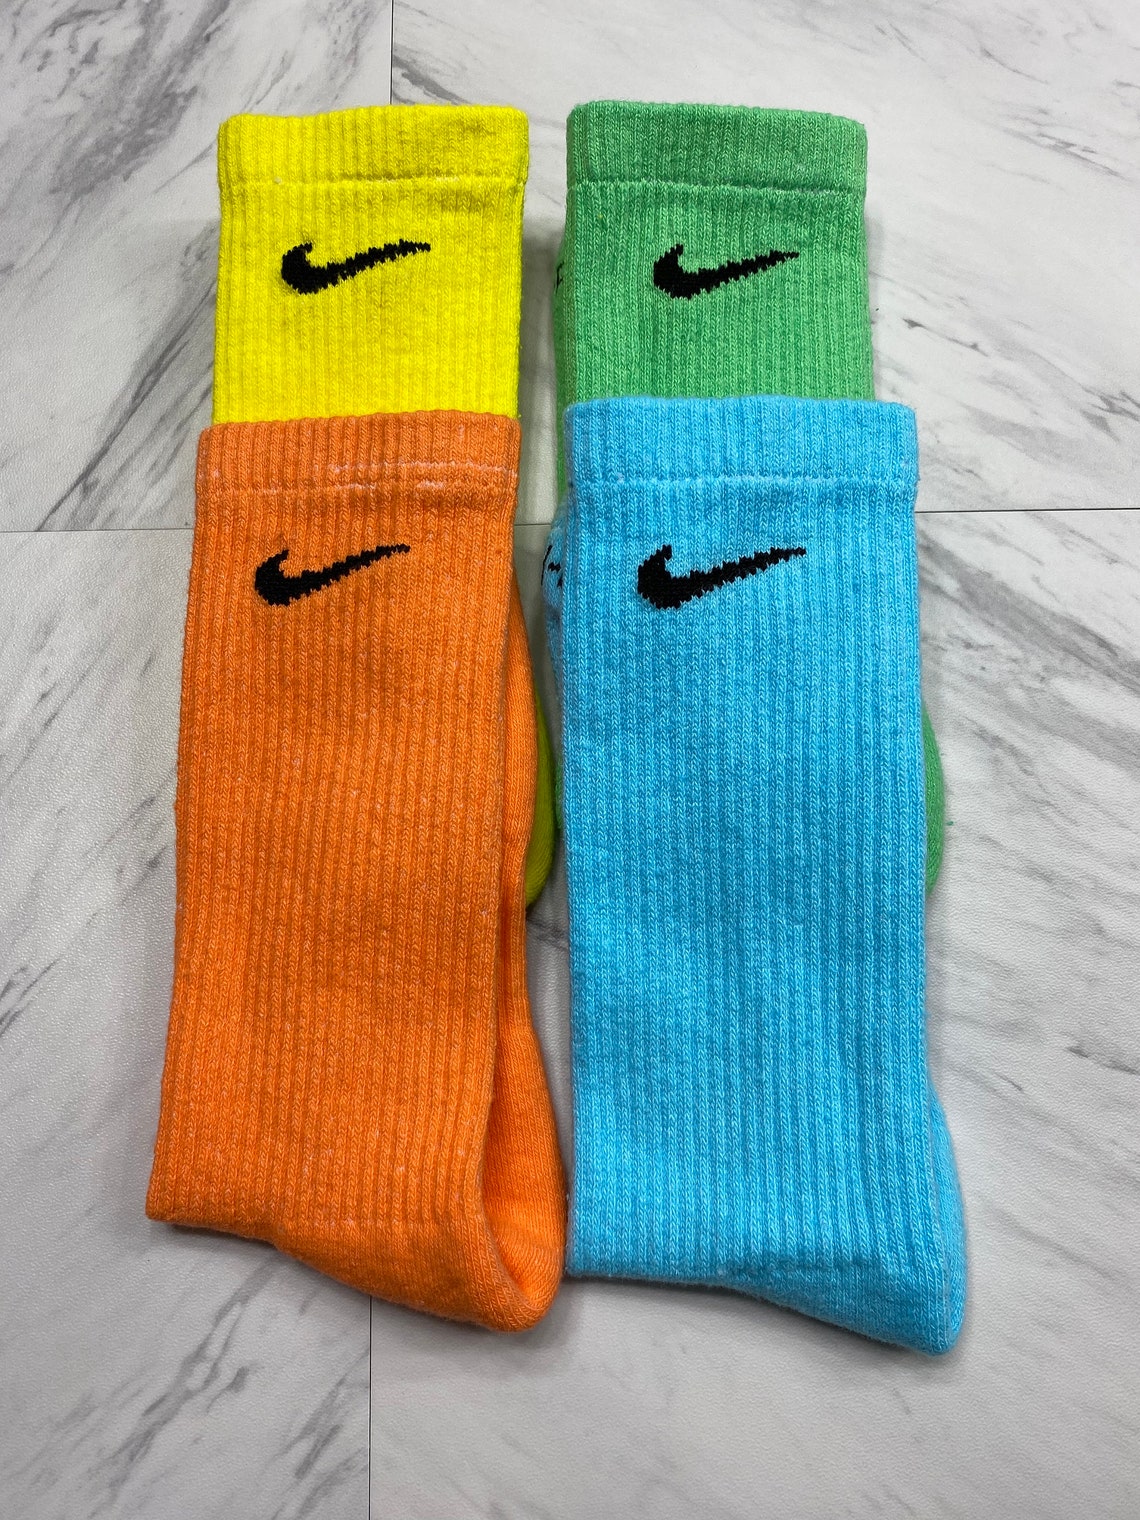 Dyed Nike Socks 12 Pack Nike Crew Socks Tie Dye Orange | Etsy